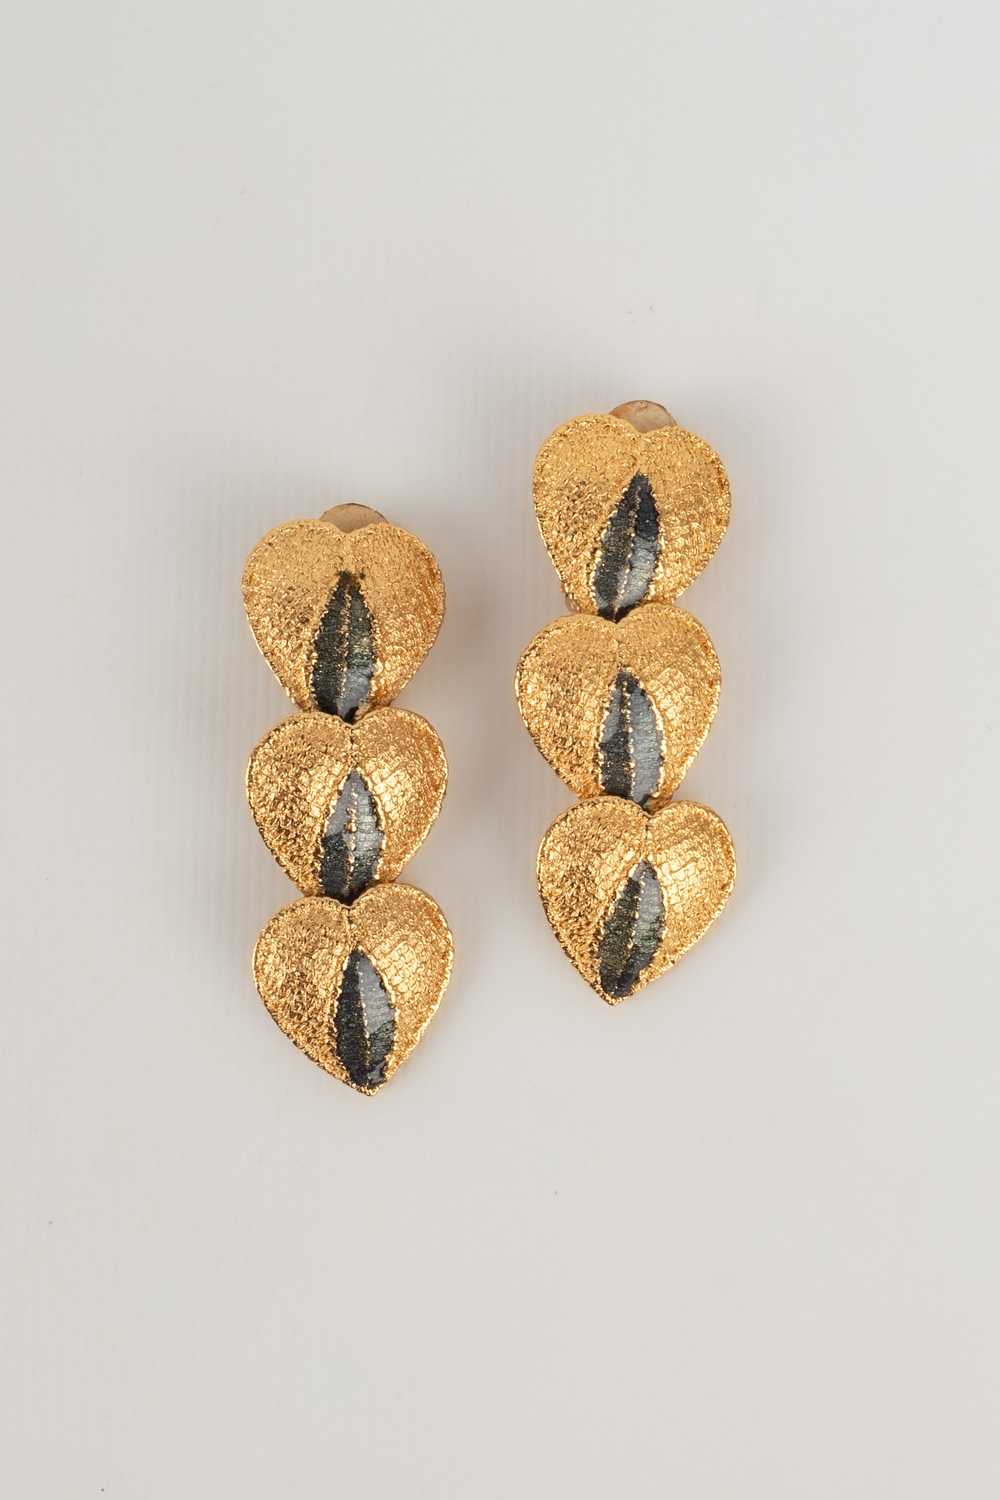 Yves Saint Laurent heart earrings - image 2